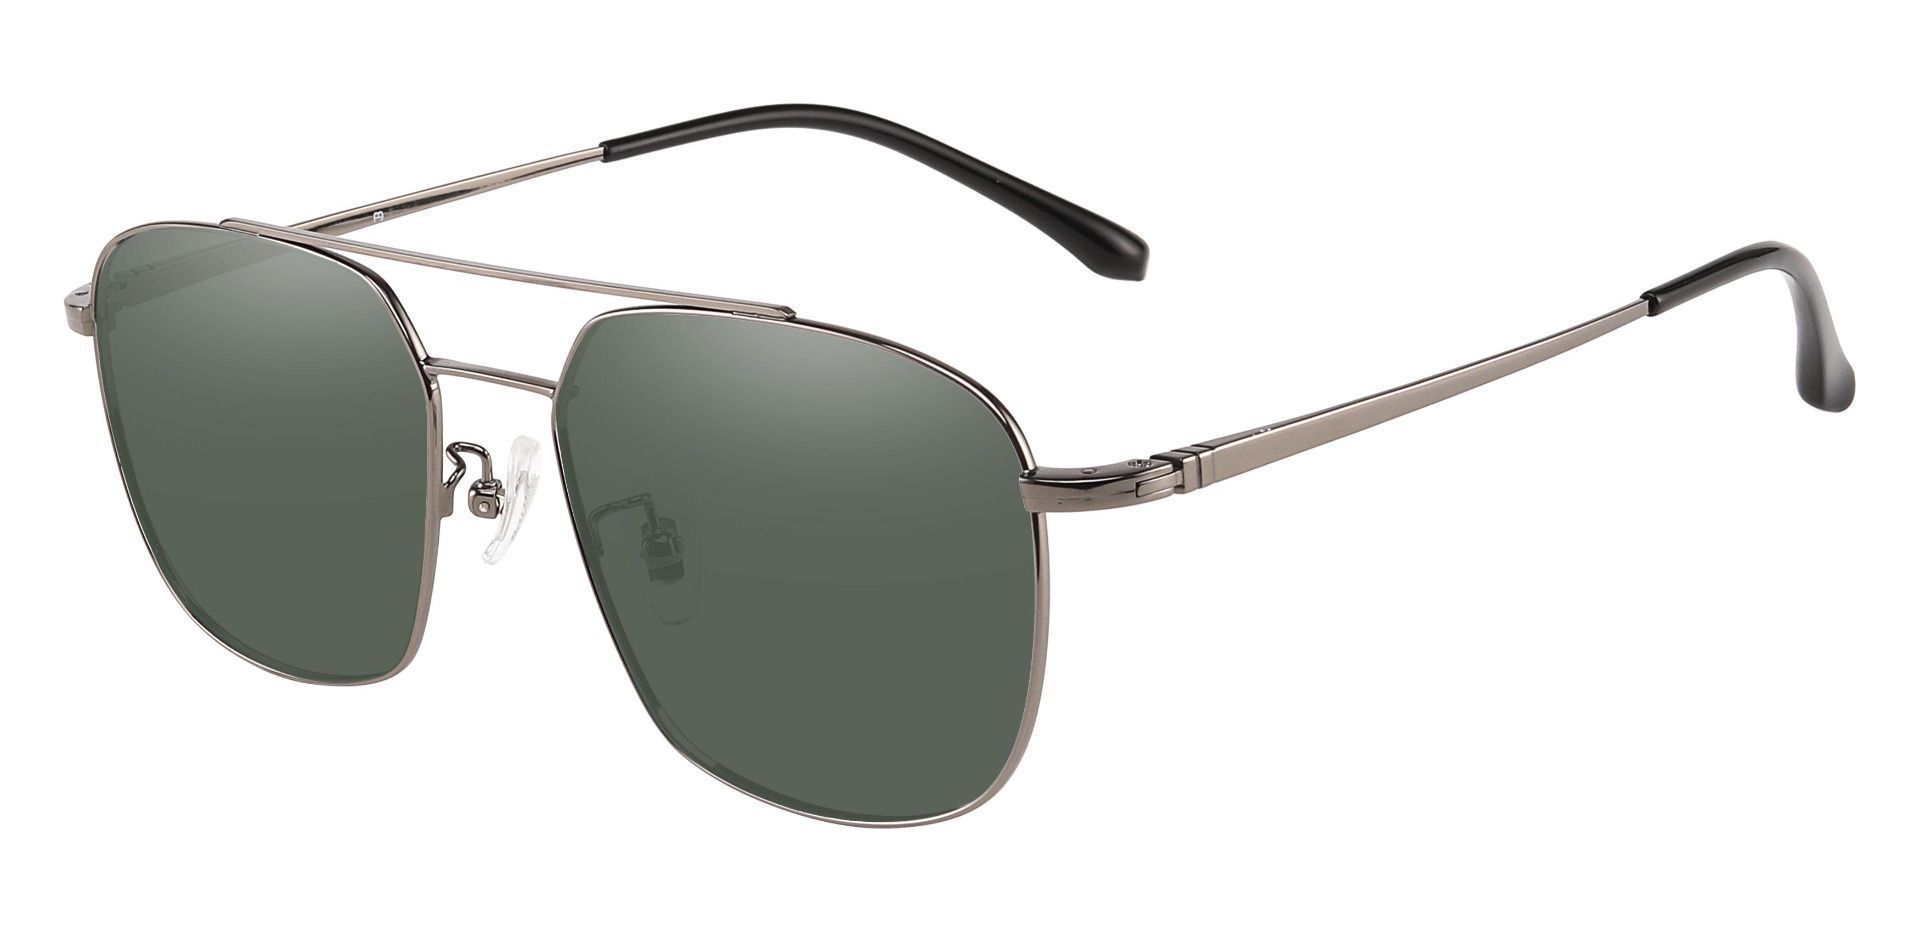 Trevor Aviator Lined Bifocal Sunglasses - Gray Frame With Green Lenses